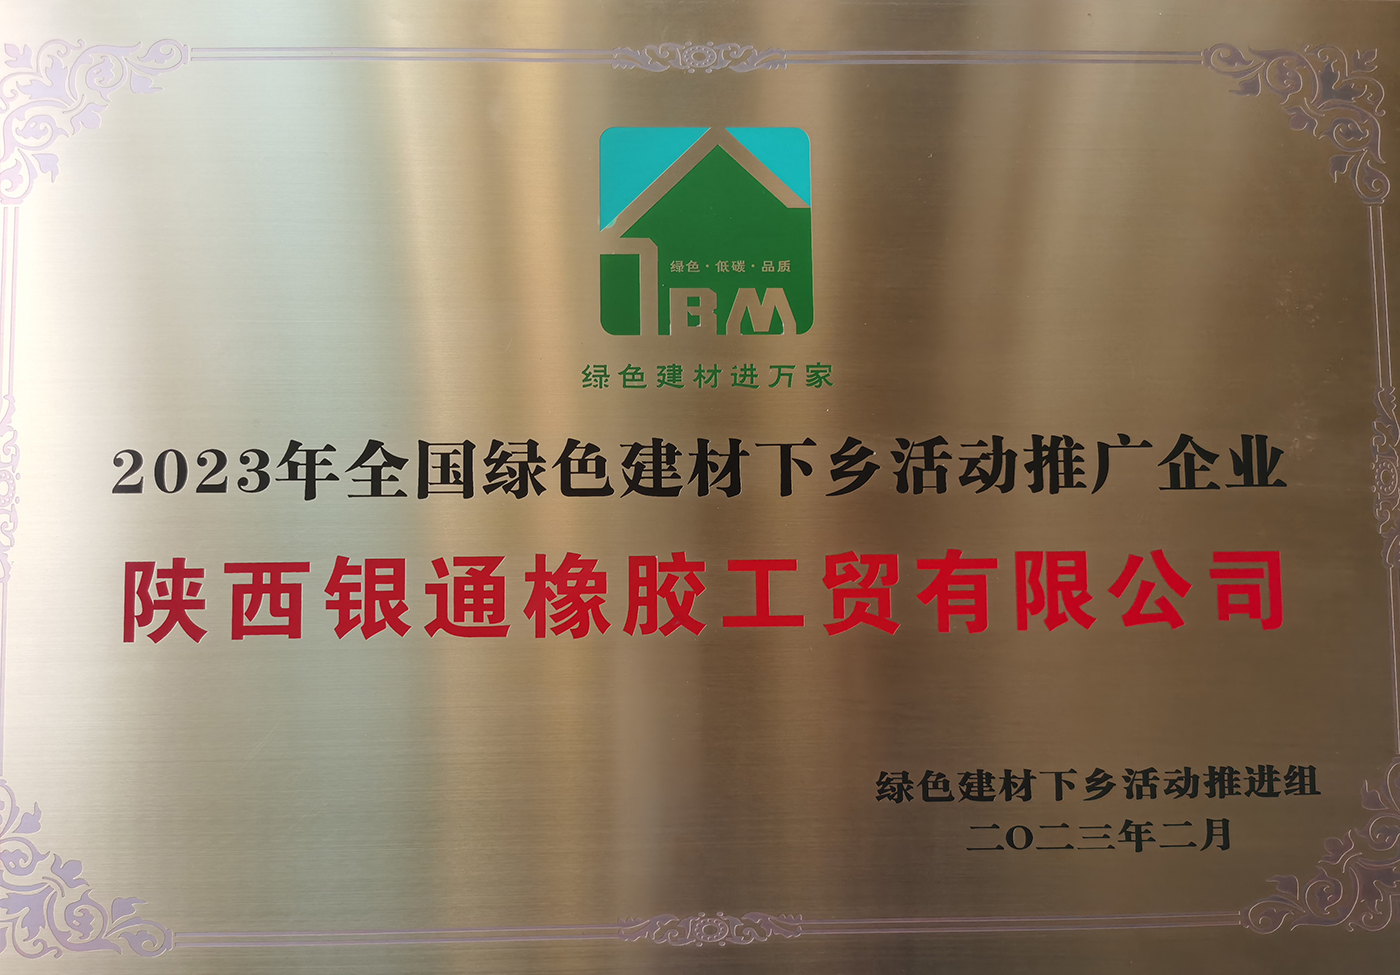 祝贺雷诺橡胶地板荣获2023年中国绿色建材下乡活动推广企业